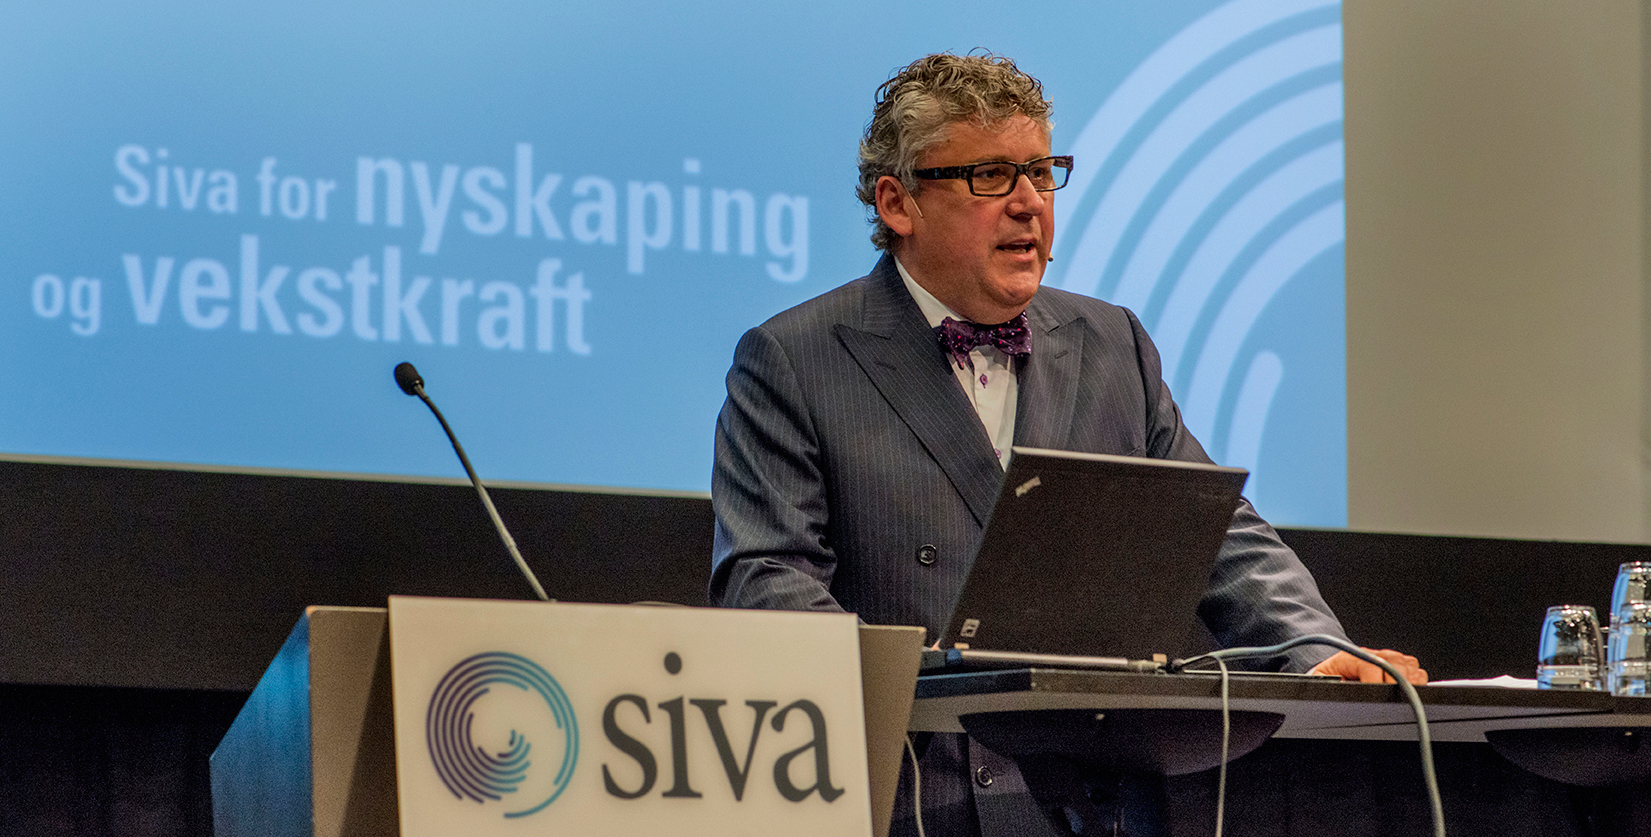 Administrerende direktør Erik Haugane i Siva oppfordrer innovasjonsmiljøene til å bli mer synlige og fortelle de gode historiene. (Foto: Siva/ Åge Hojem)